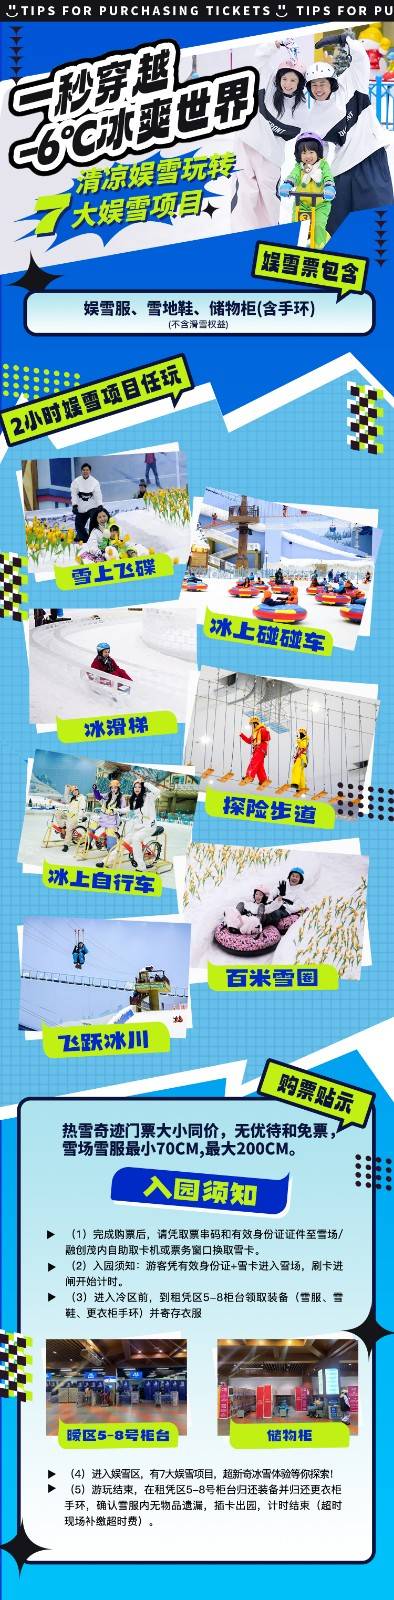 【女神特惠X平日票】广州热雪奇迹-4小时滑雪+娱雪通玩女士特权票丨适用日期3.1-3.17